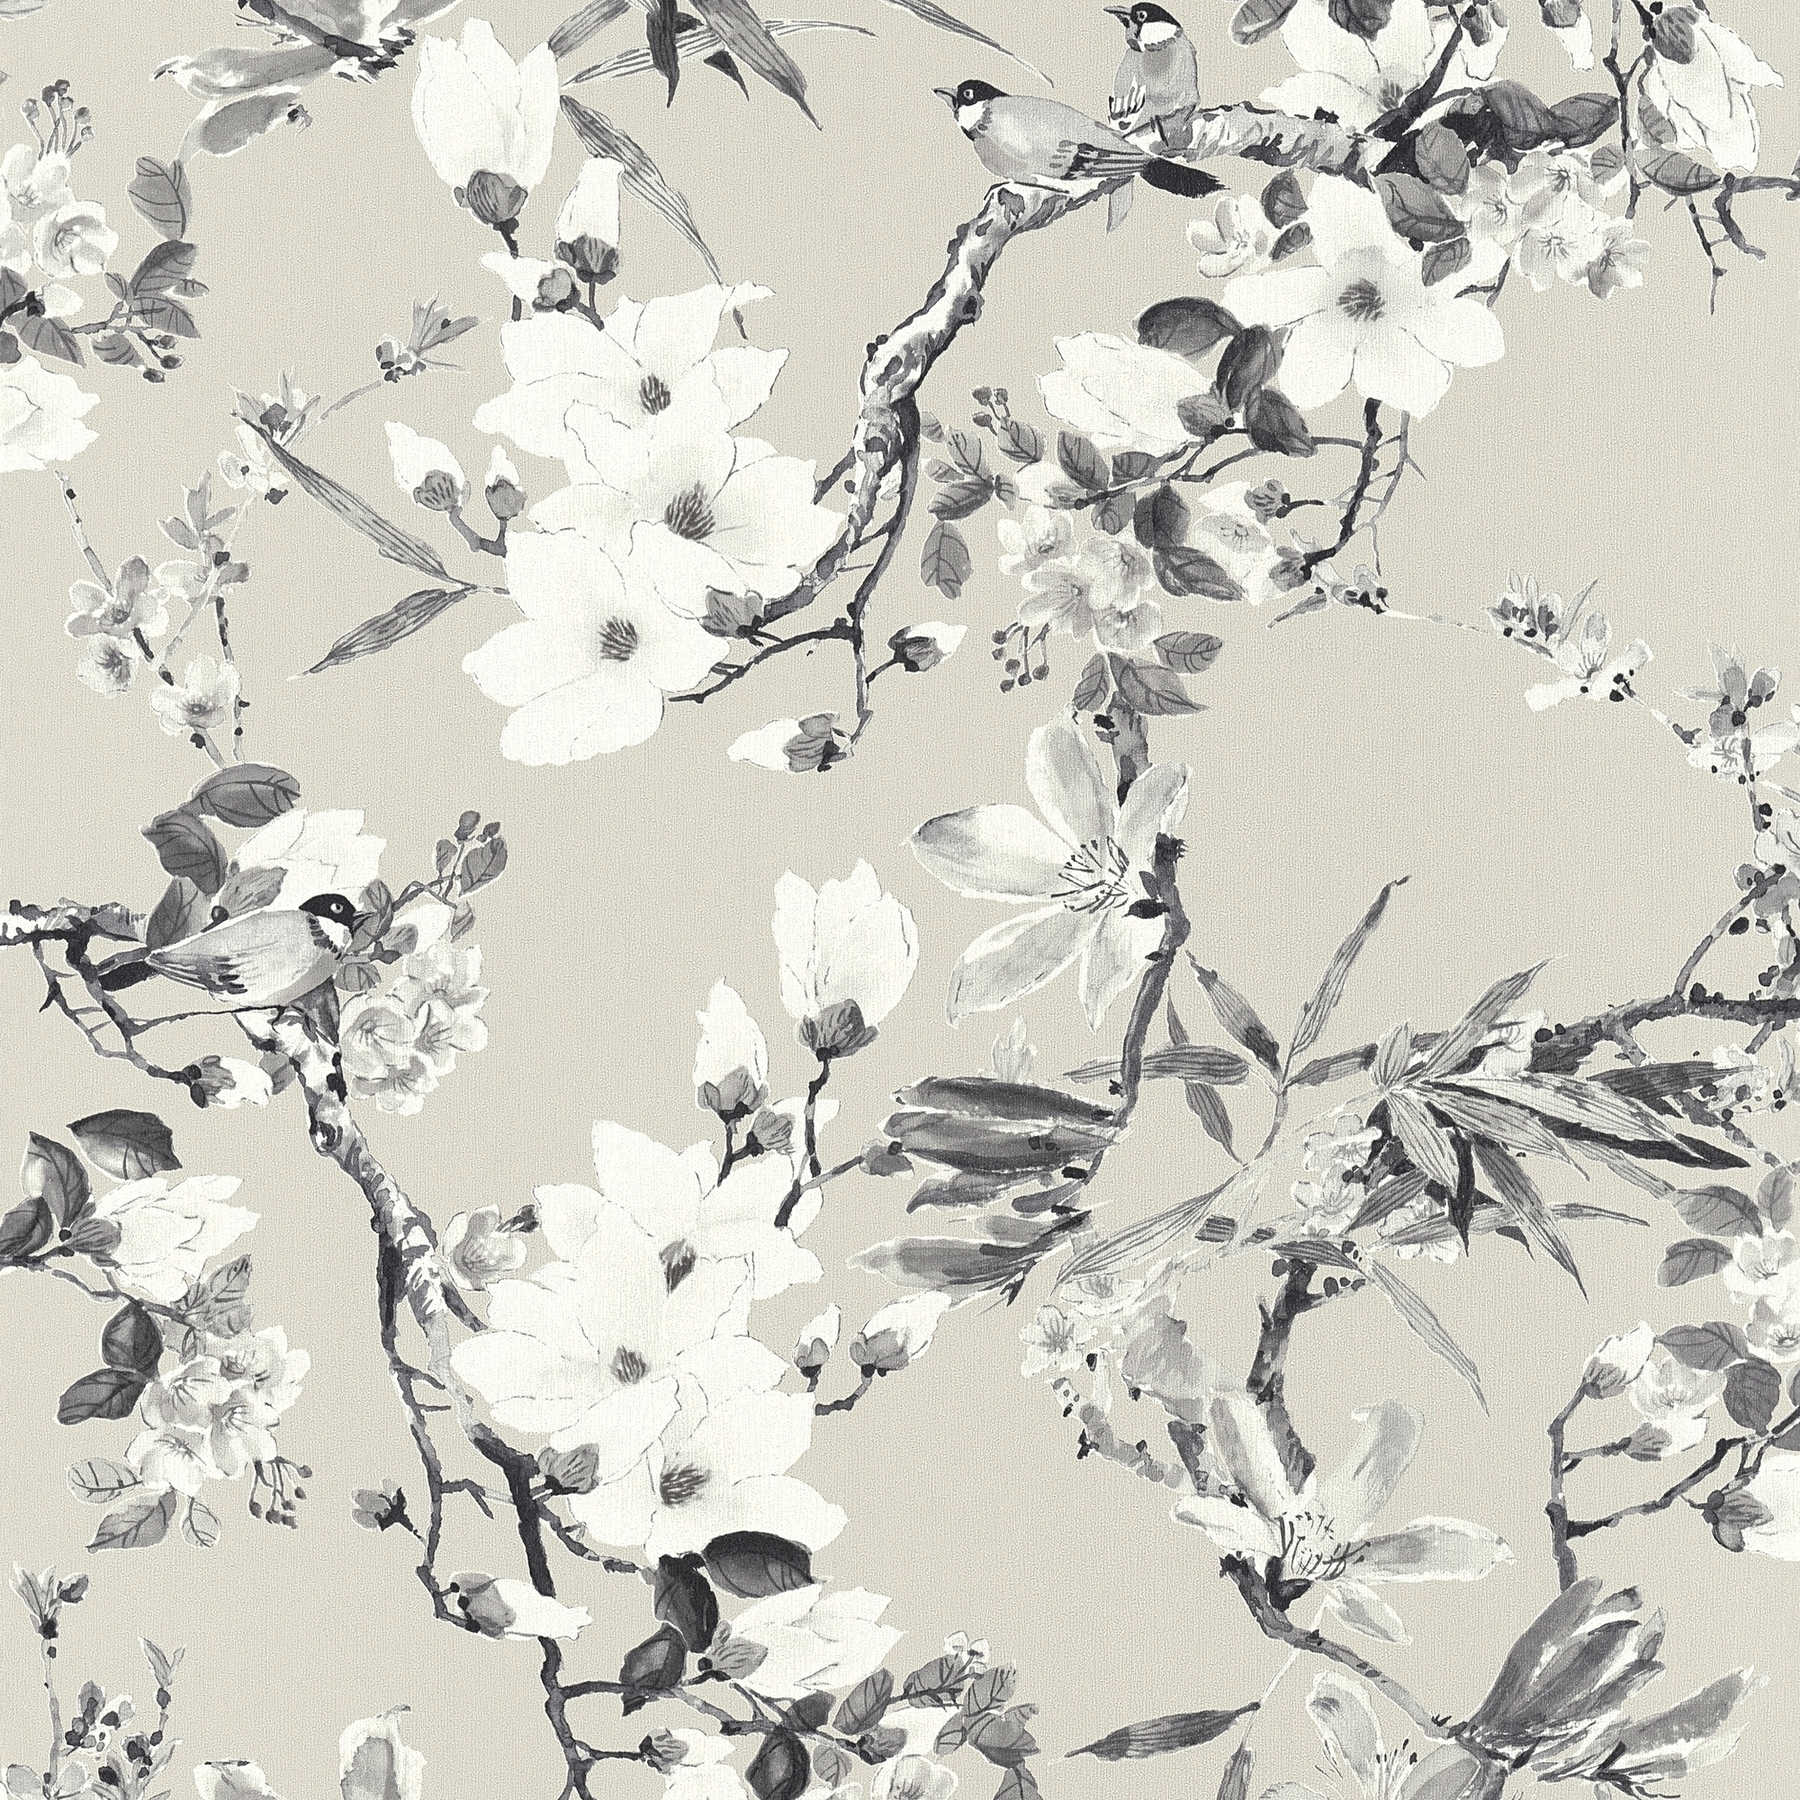         MICHALSKY bloemenbehang in neutrale kleuren - beige, grijs
    